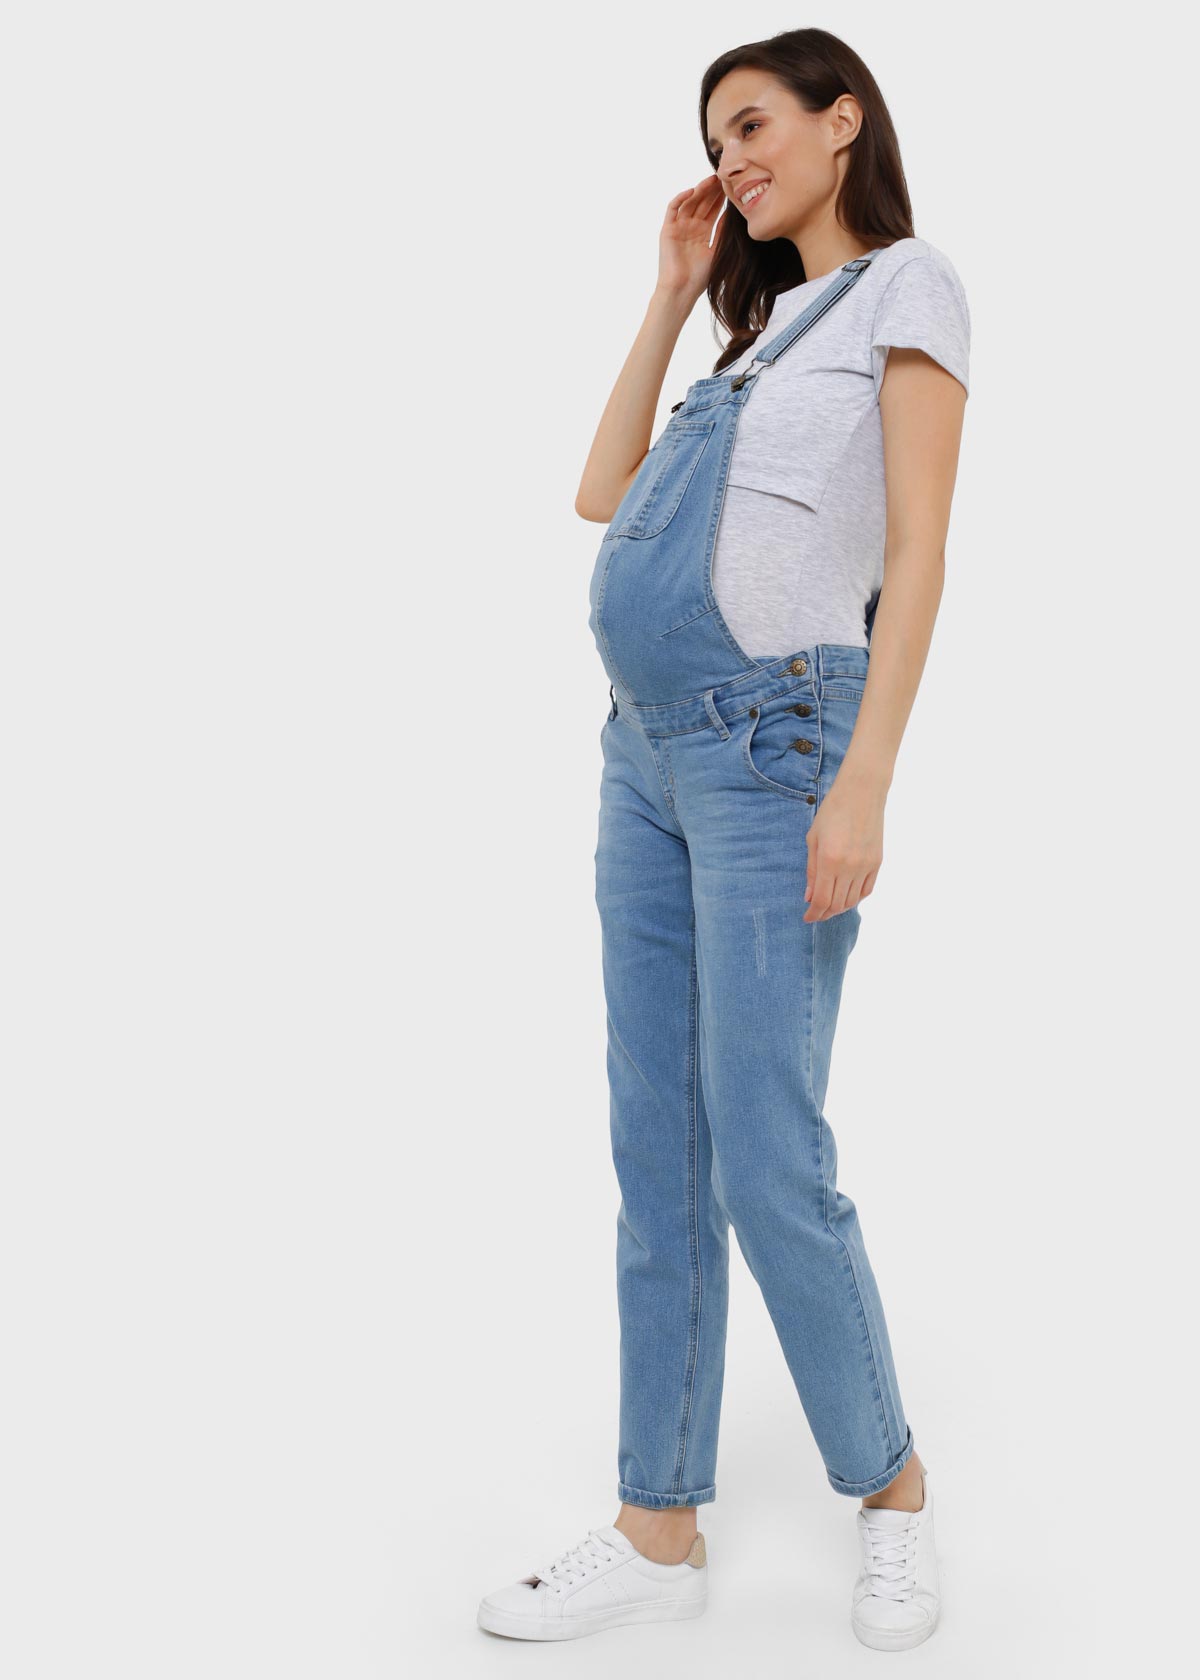 Медицинская одежда для беременных